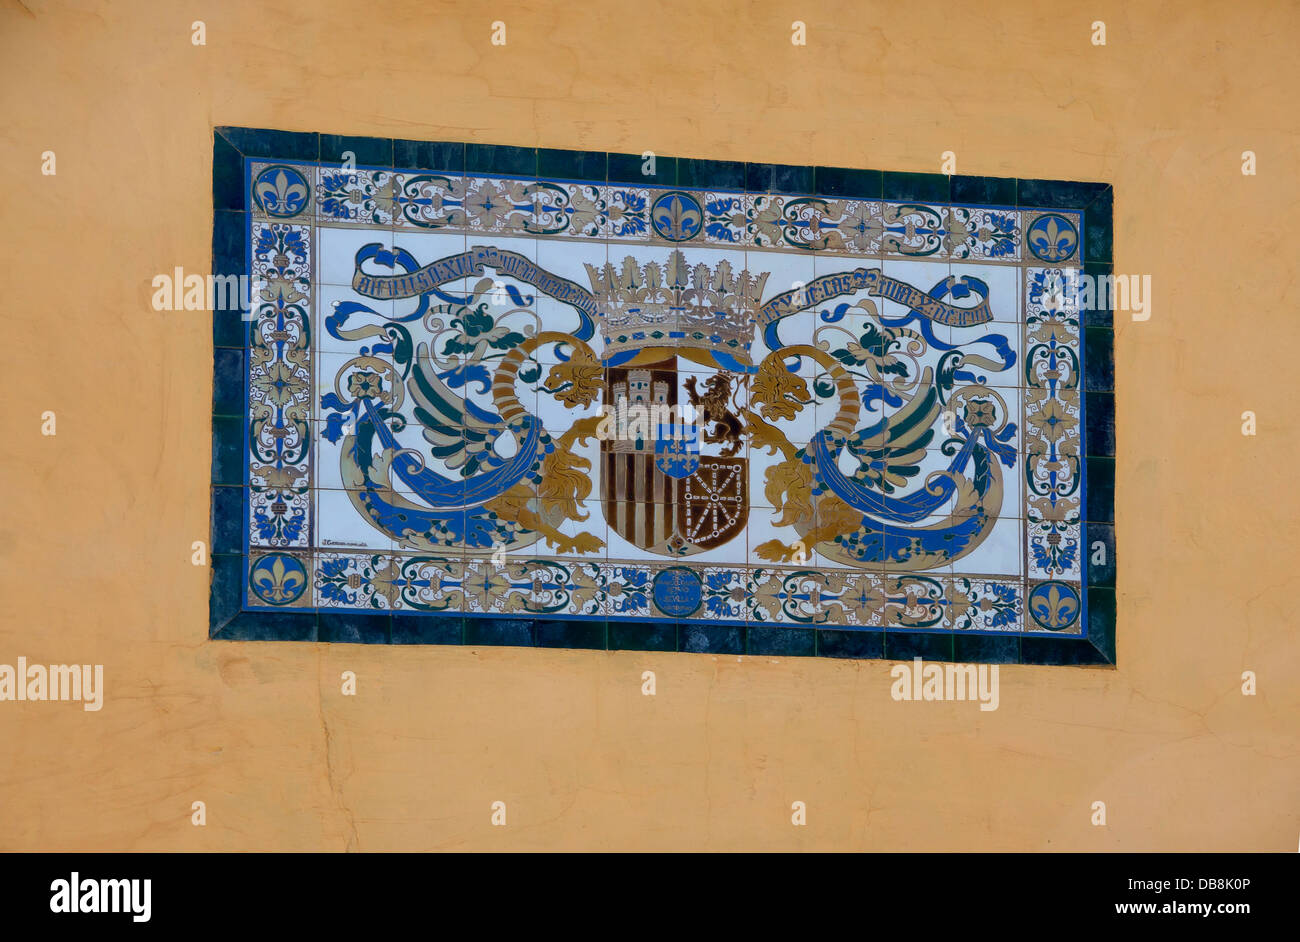 Carreaux décorés avec le (mauvais) CoA du roi Alphonse XIII d'Espagne. Mercurius Gardens, de l'Alcazar de Séville, Espagne. Banque D'Images